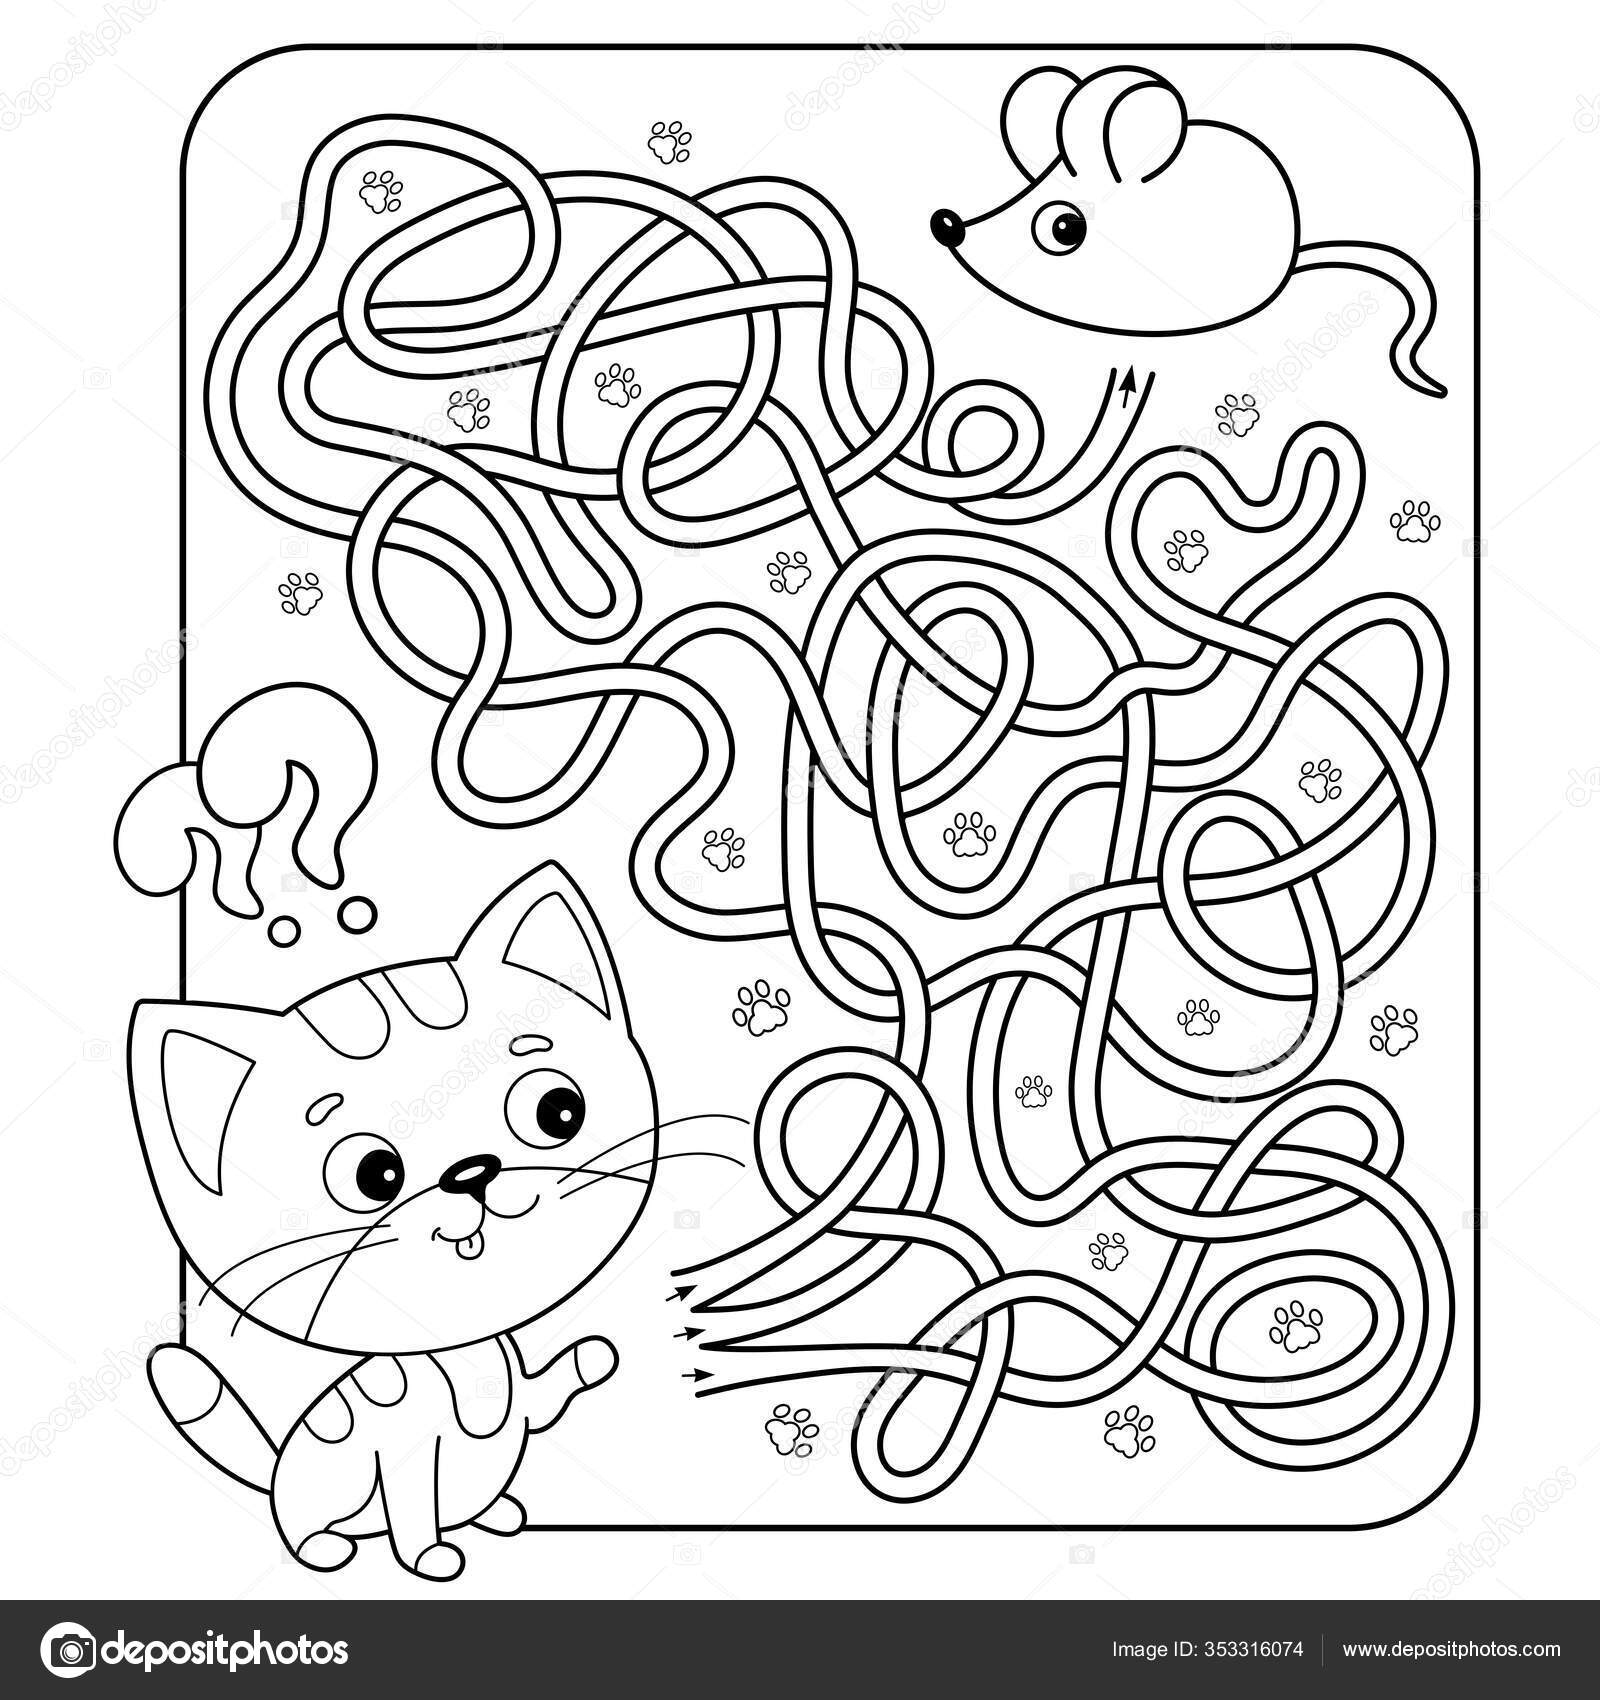 Gato : Desenhos para colorir, Desenhos para crianças, Jogos